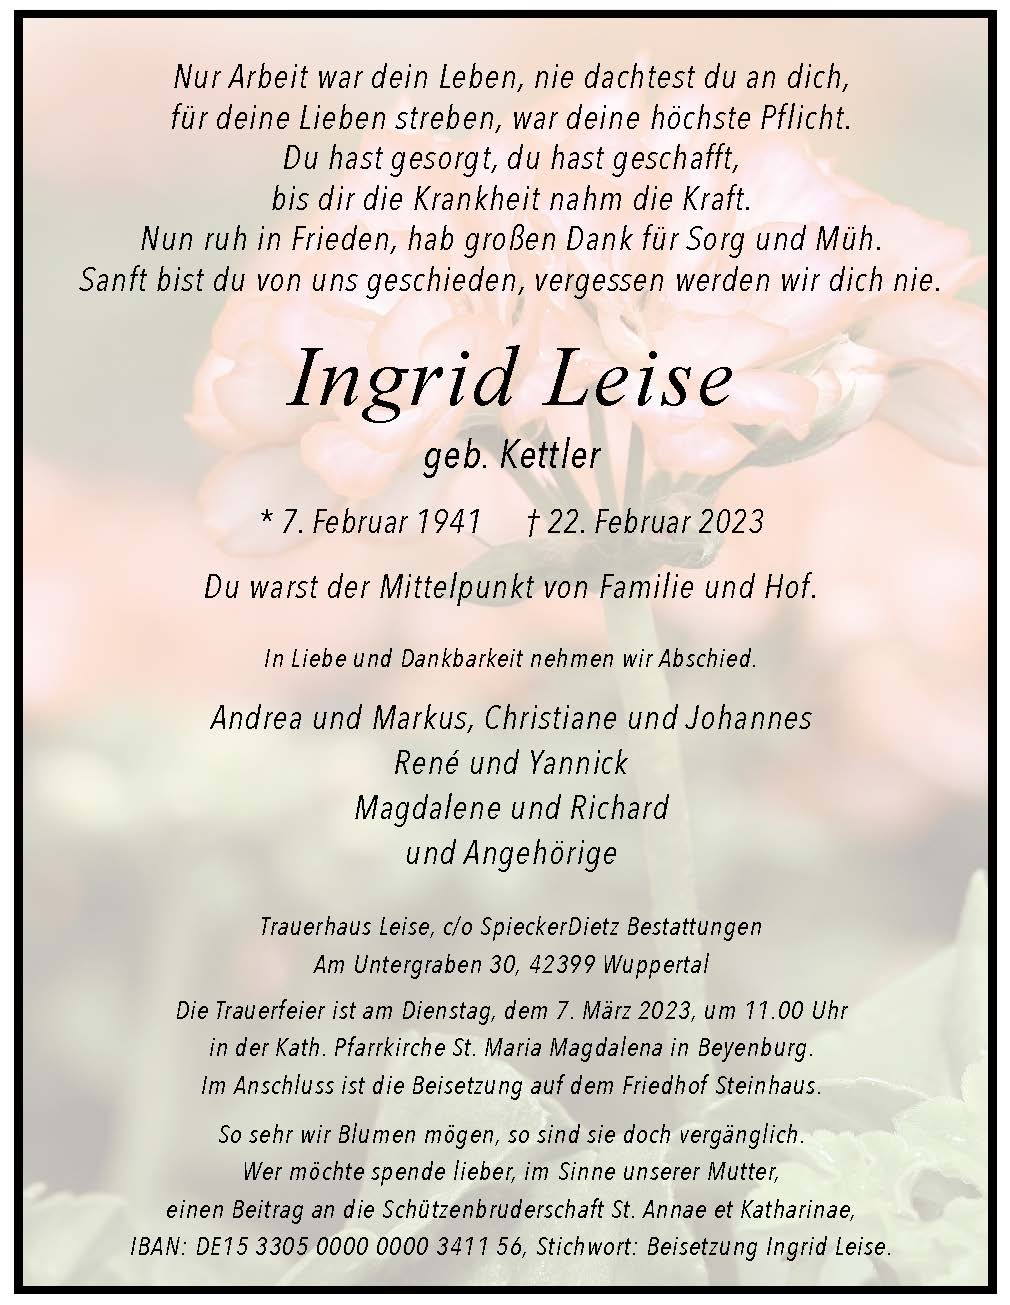 Ingrid Leise